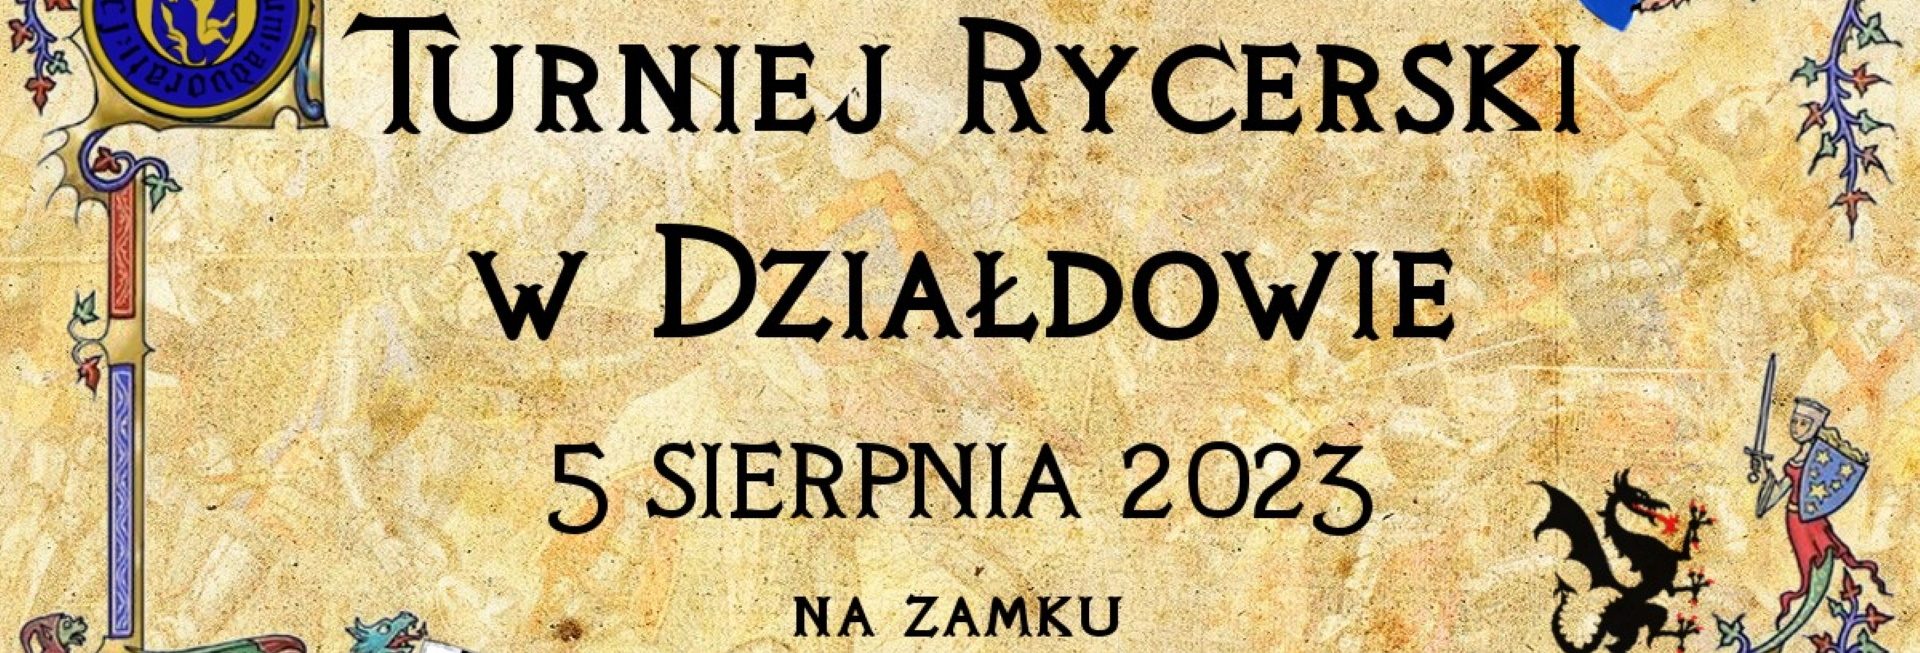 Plakat zapraszający w sobotę 5 sierpnia 2023 r. turystów i mieszkańców do Działdowa na Turniej Rycerski Działdowo 2023.